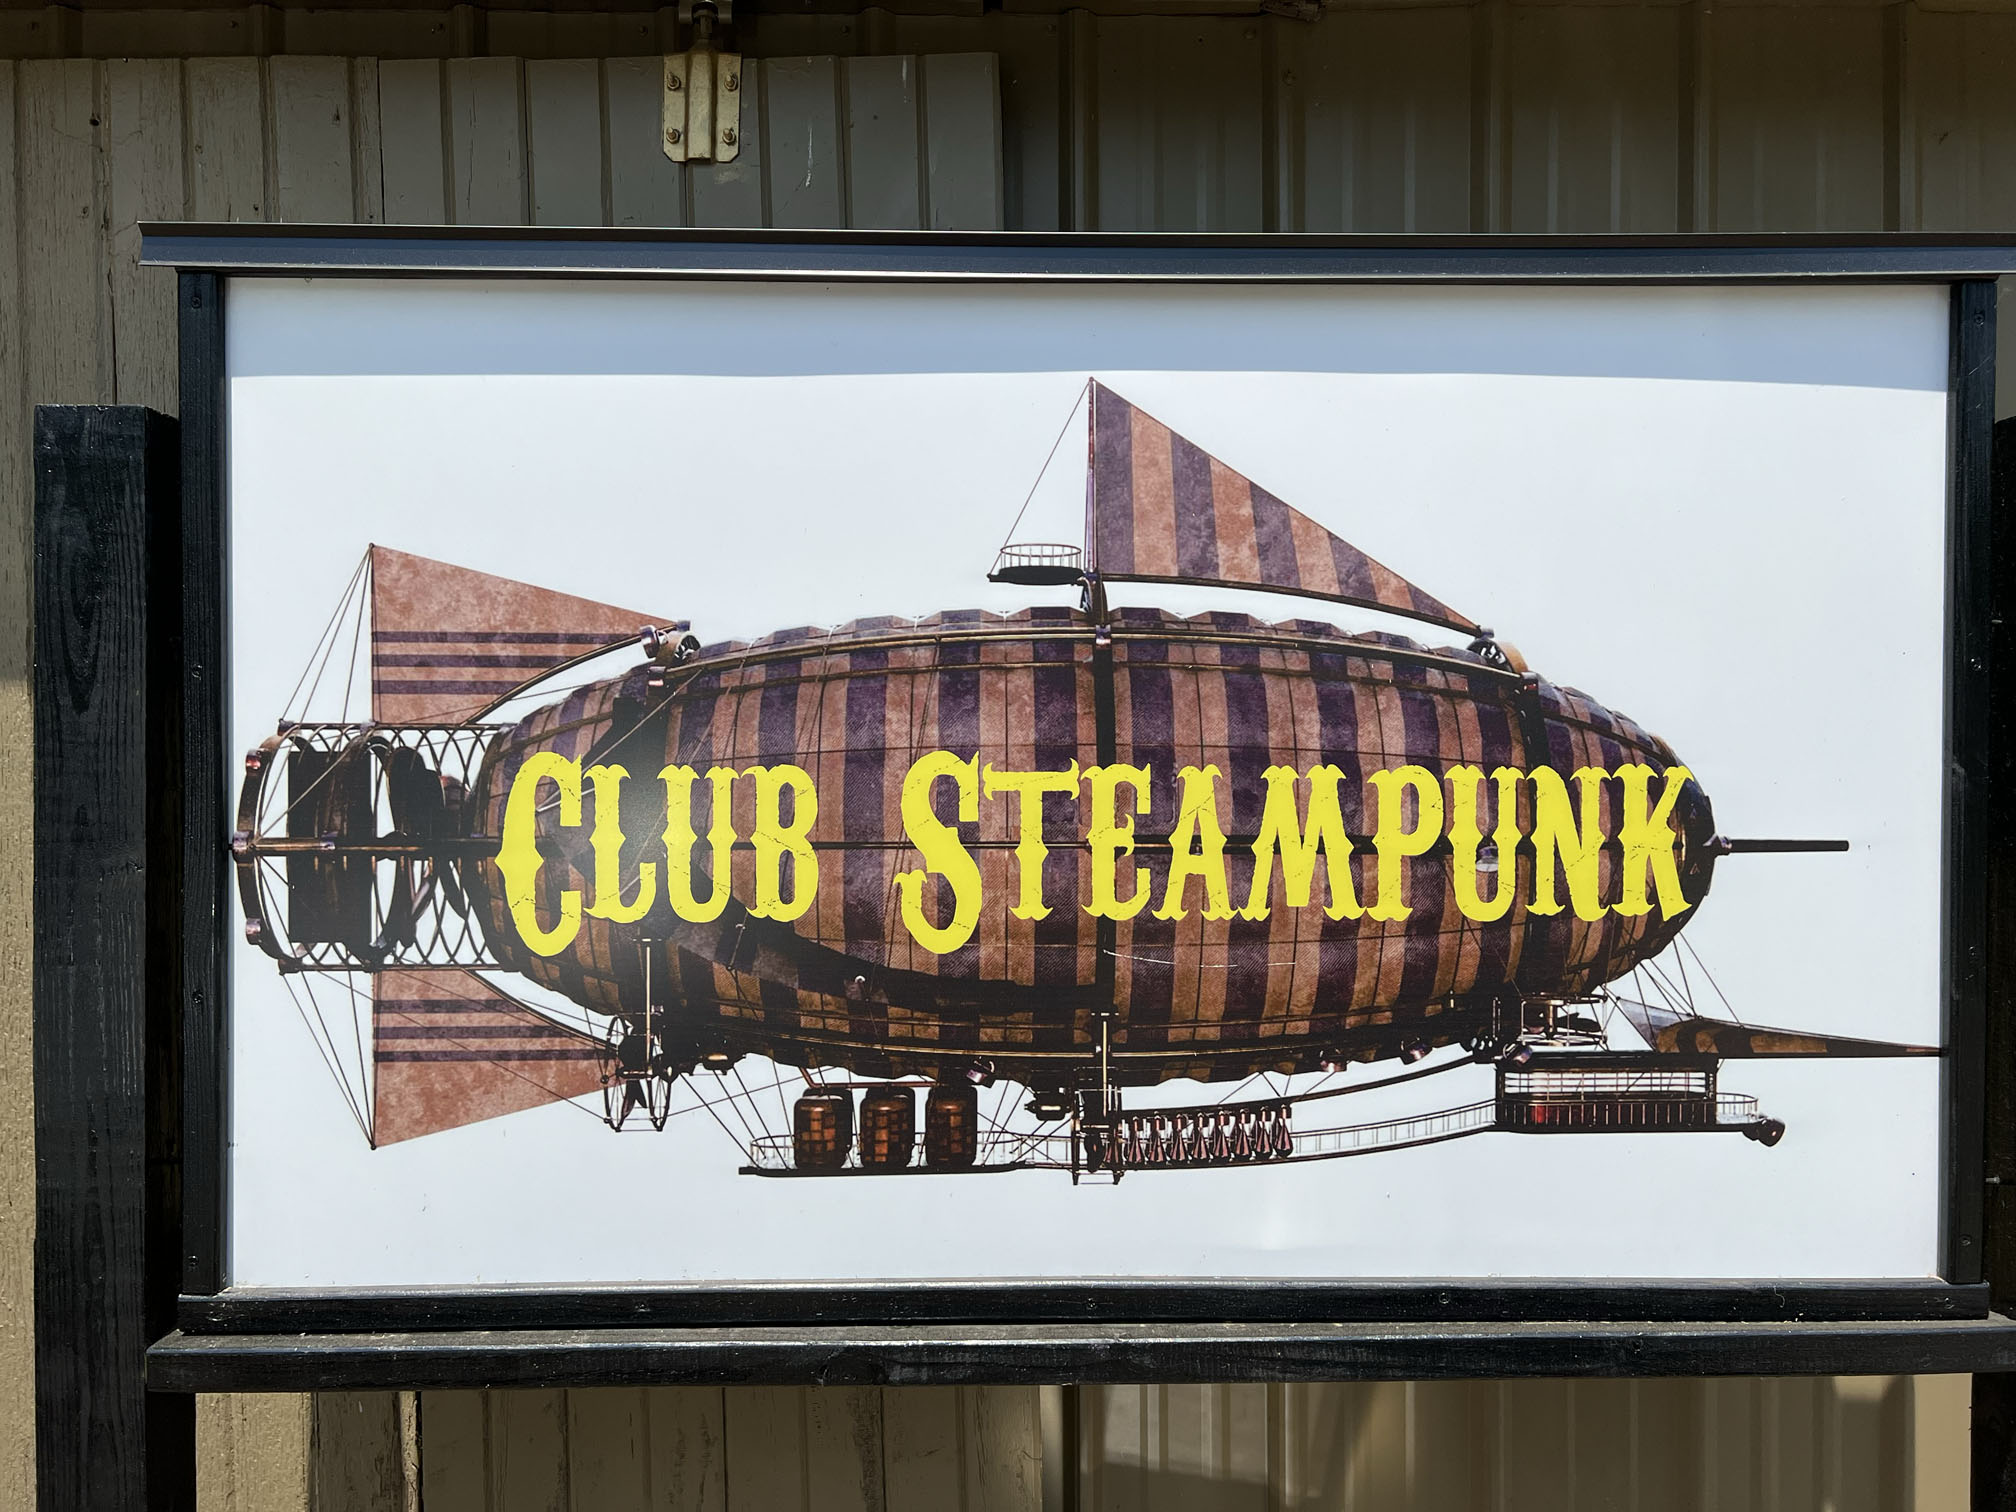 Club Steampunk entrance sign